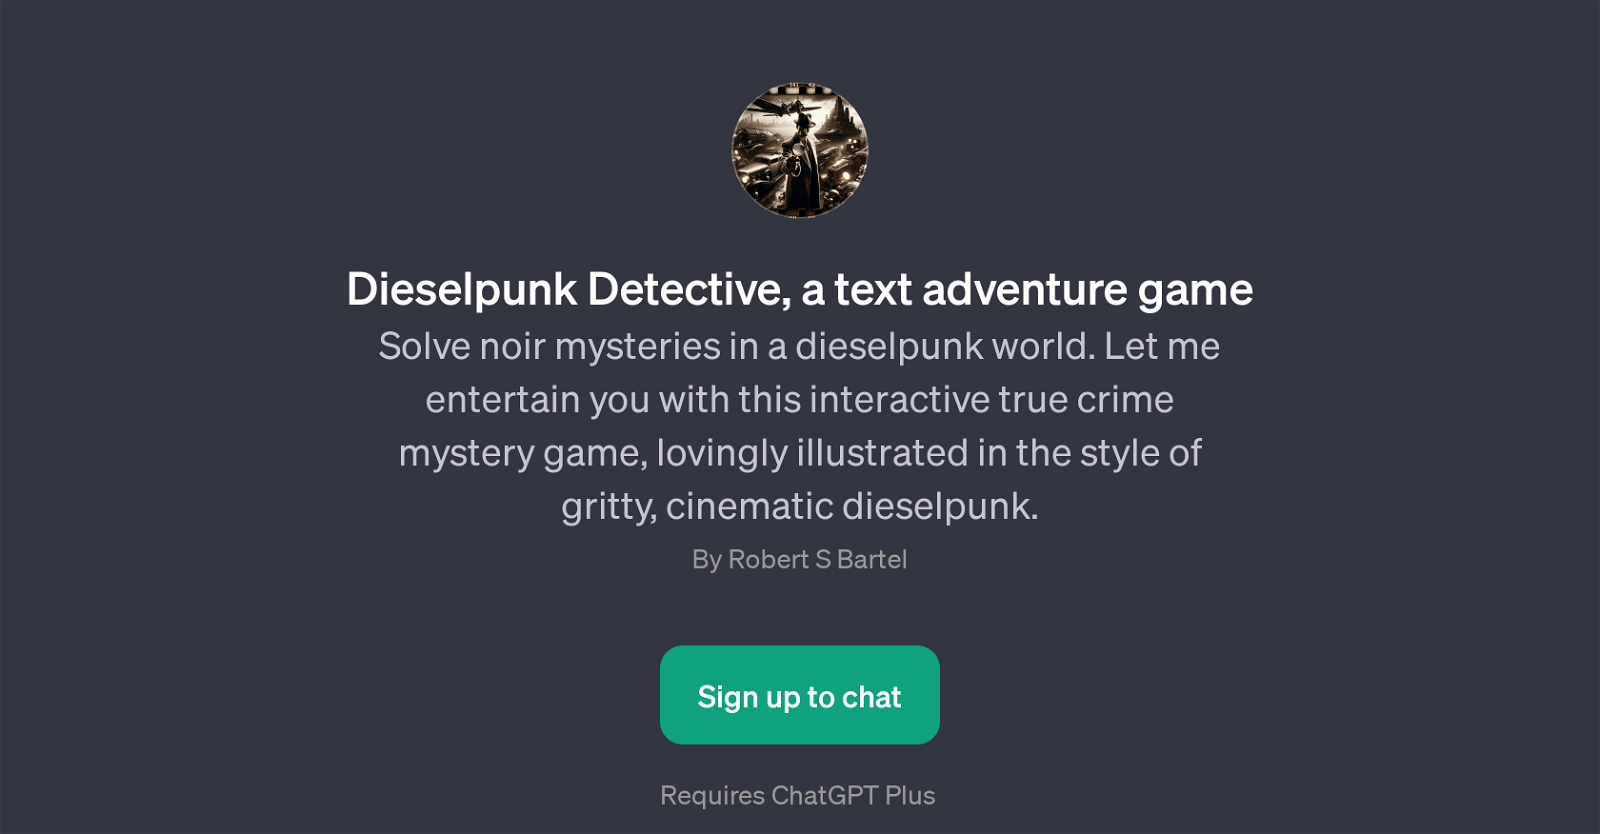 Dieselpunk Detective website